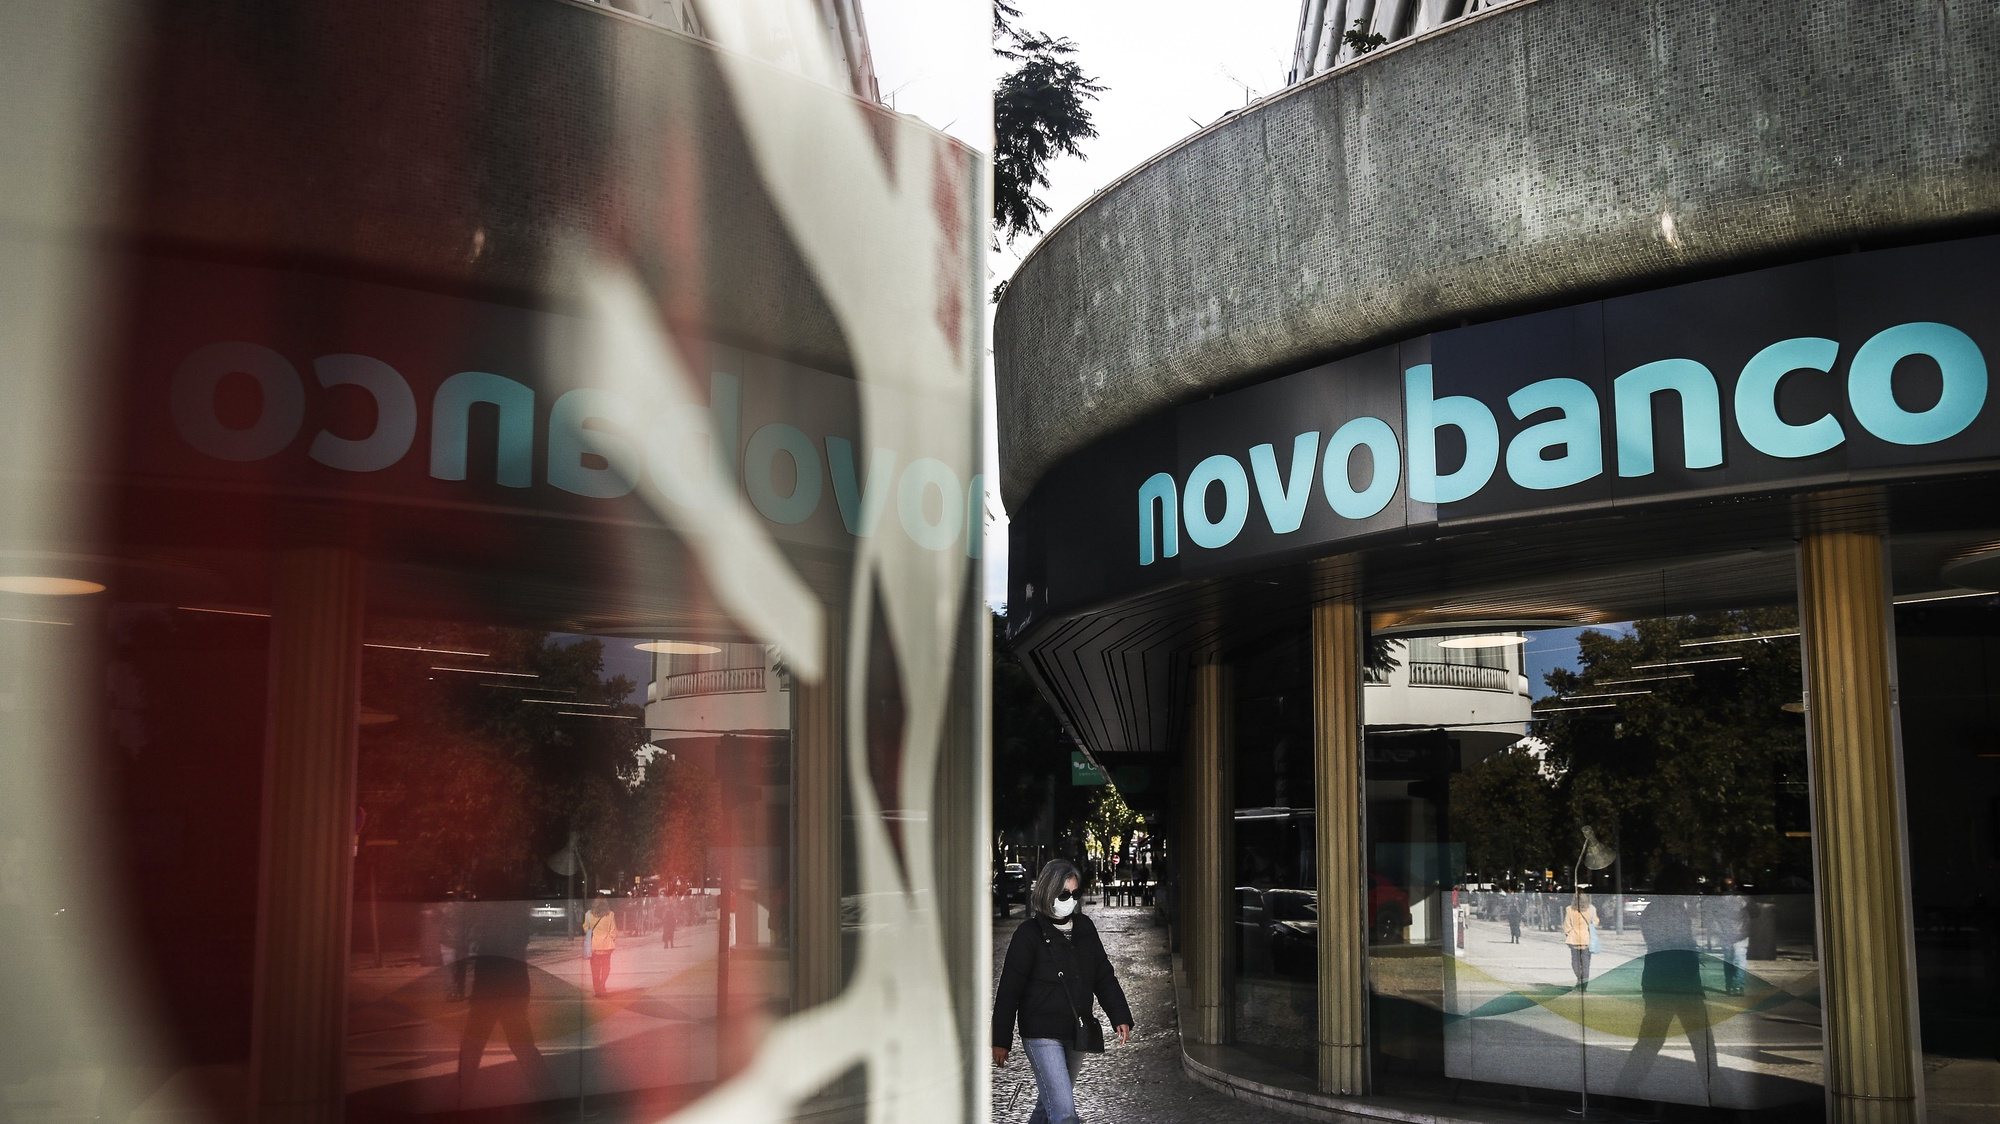 Uma pessoa passa por um balcão do Novo Banco após a aplicação da nova imagem de marca, em Lisboa, 8 de novembro de 2021. MÁRIO CRUZ/LUSA